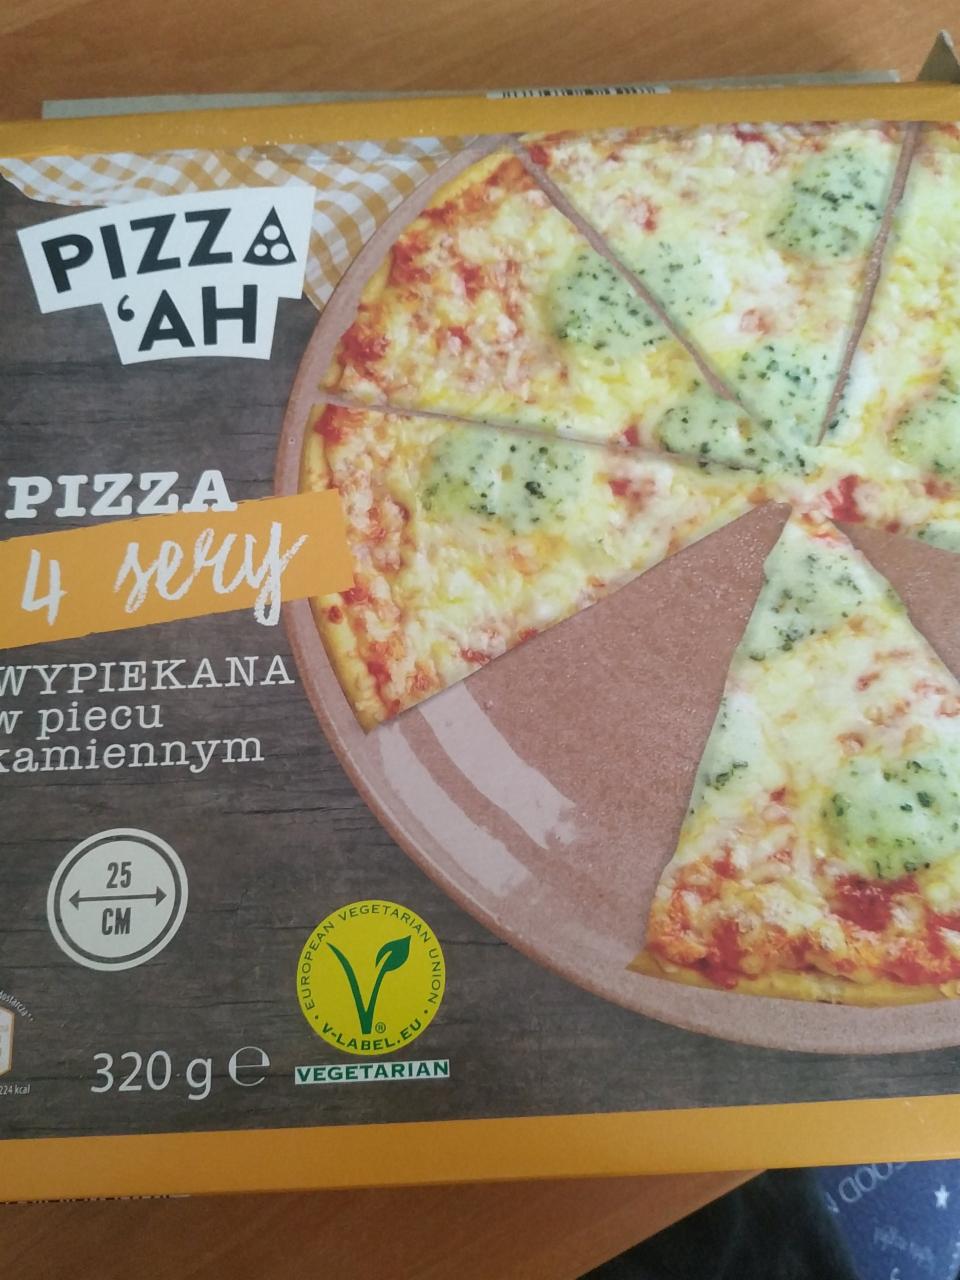 Фото - 4 sery пицца 4 сыра Pizza ah